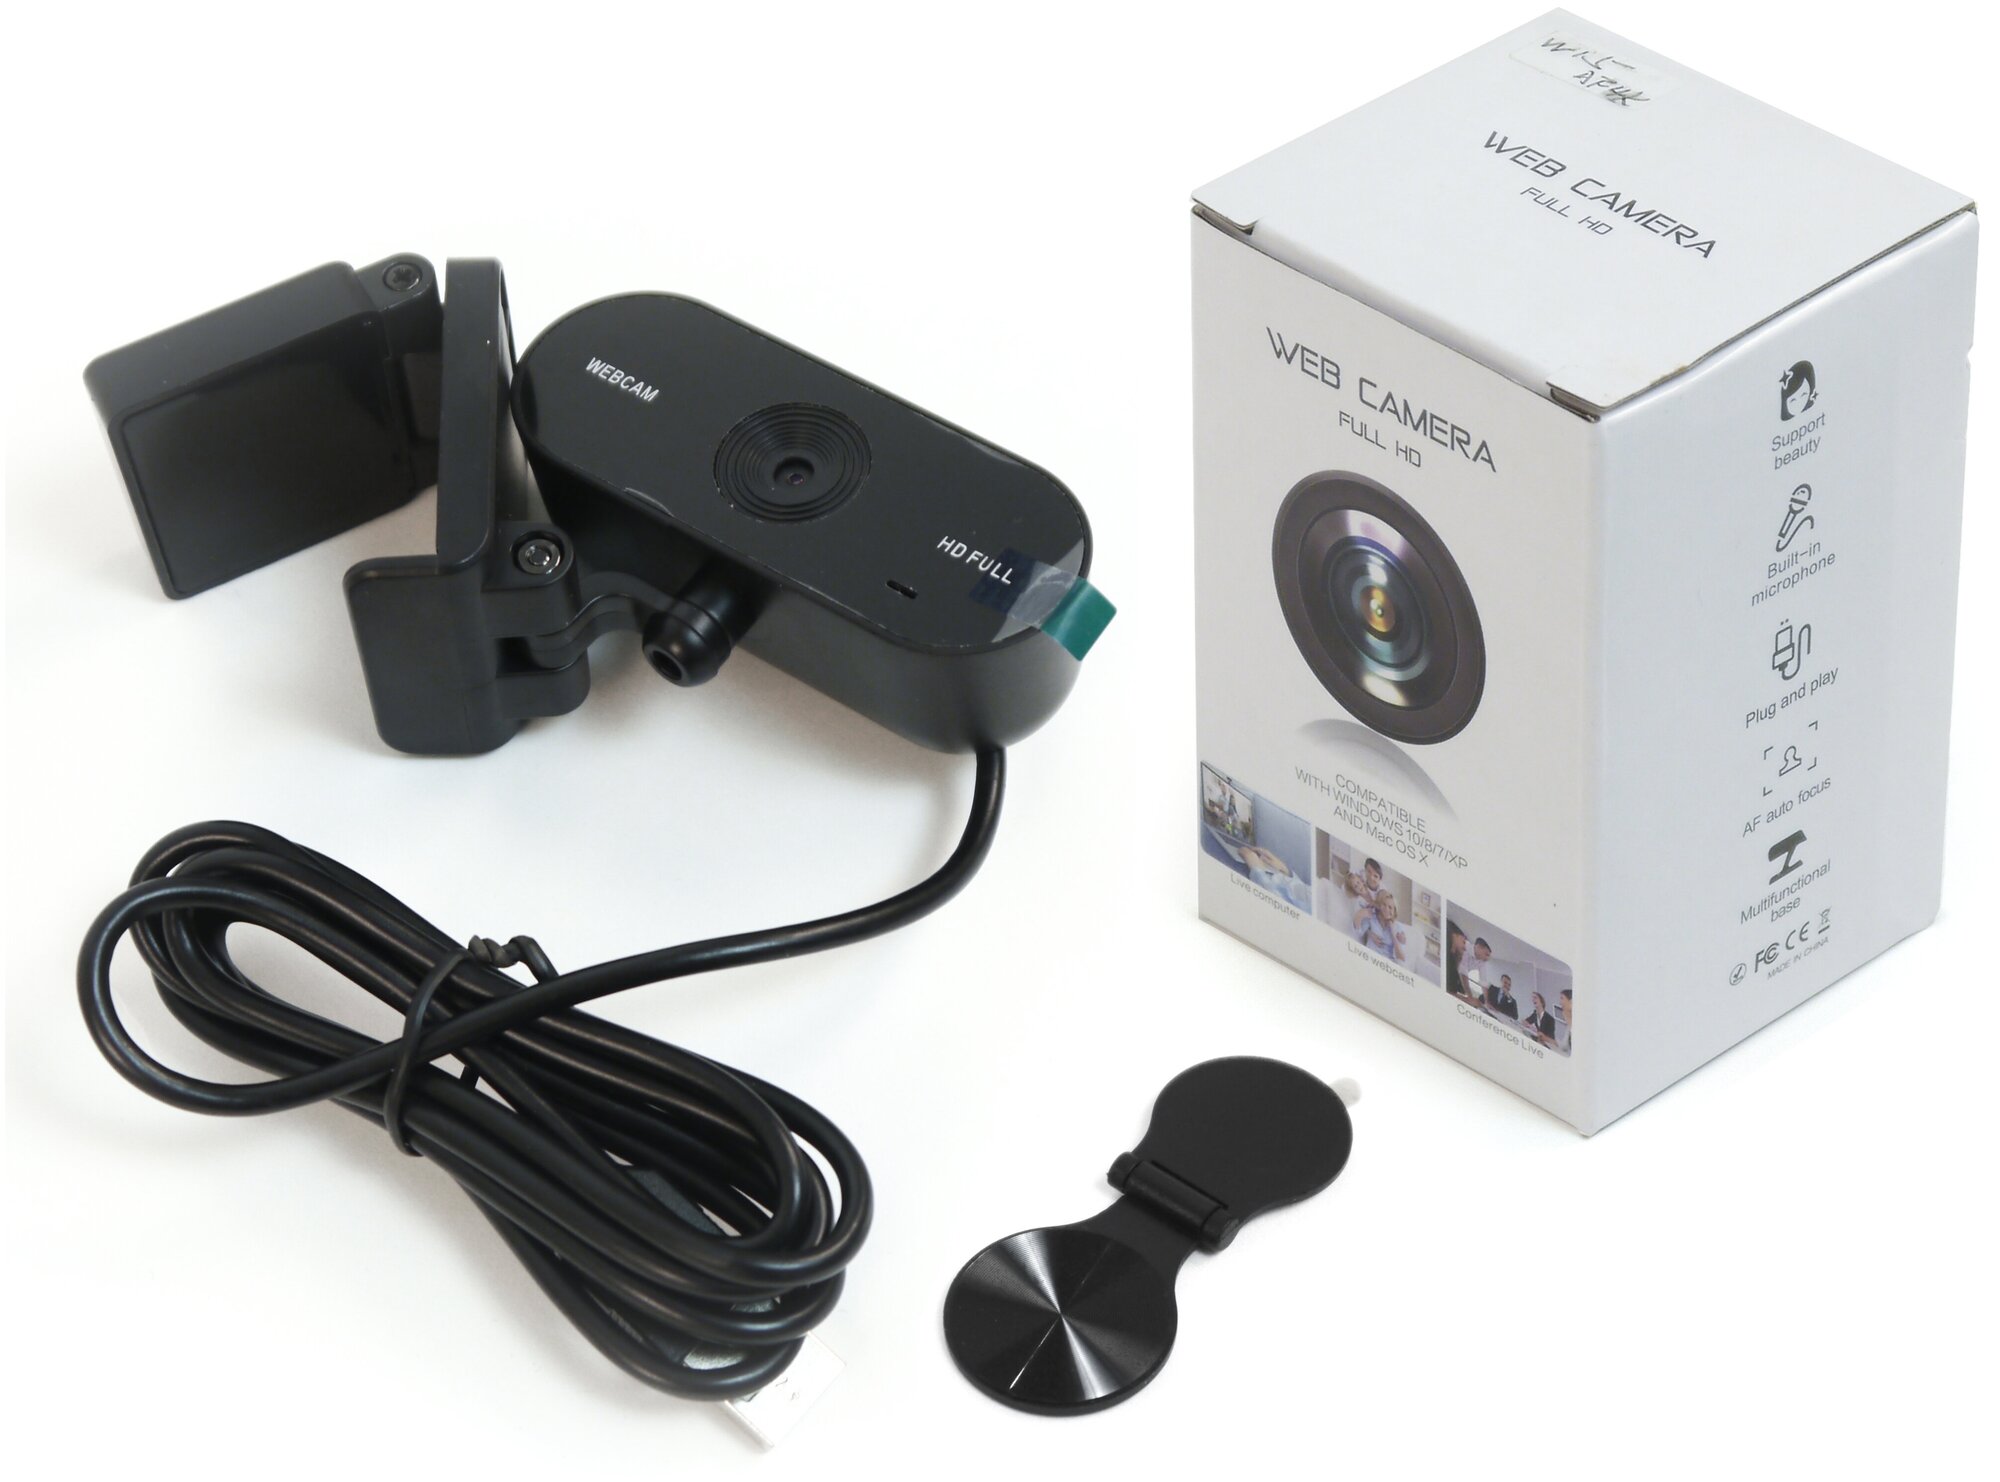 Web камера FullHD HDcom Zoom W15-FHD - камера для компьютера онлайн / камера для конференций. Full HD - 1920x1080 в подарочной упаковке